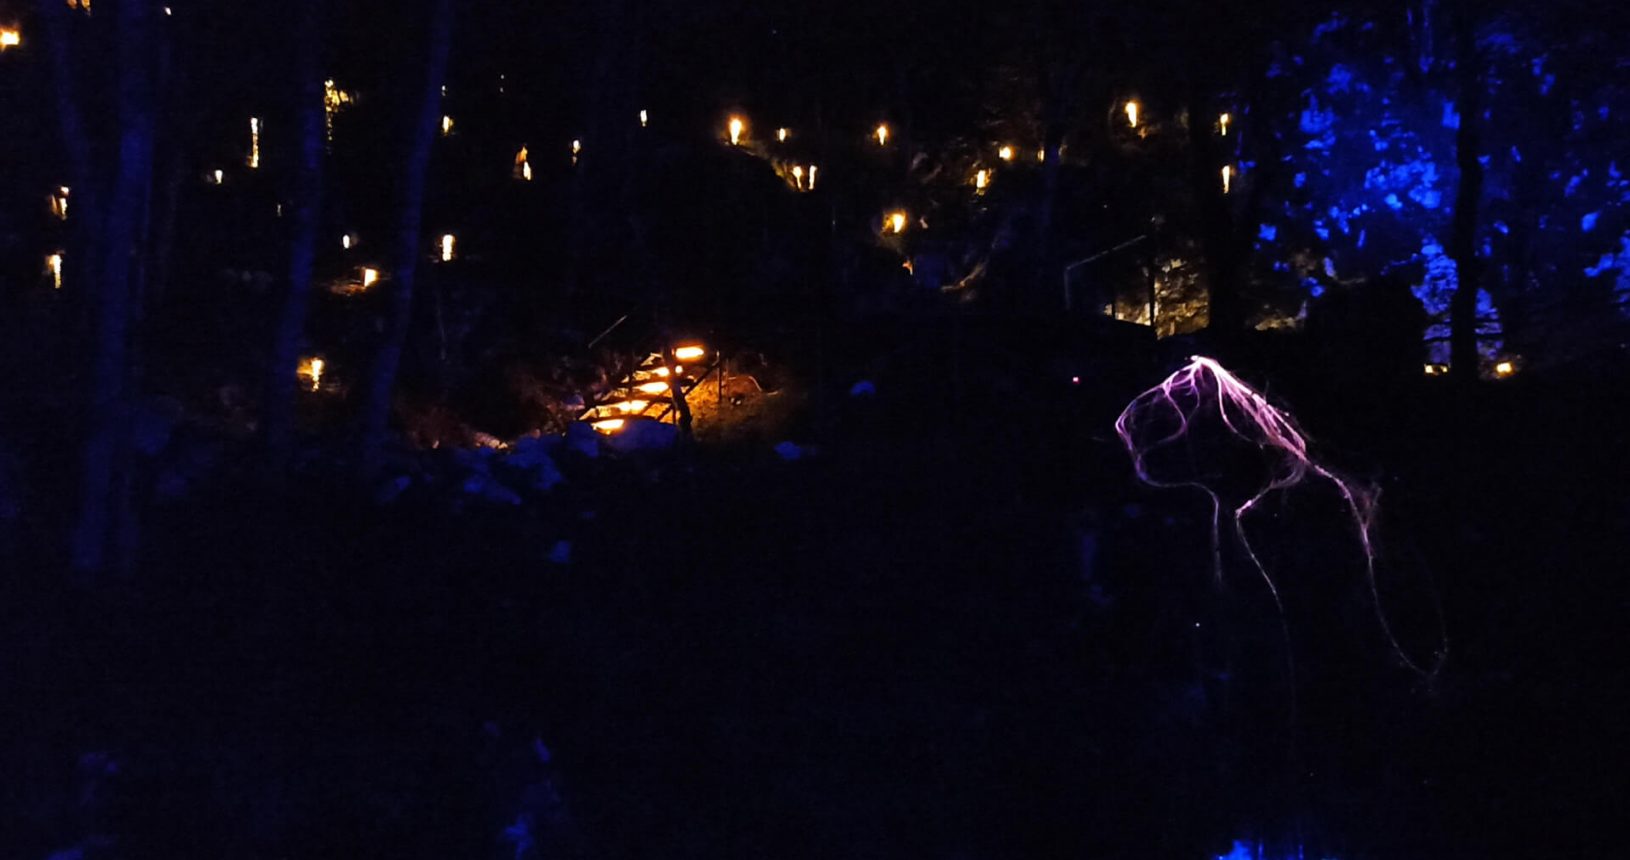 Dark night lights lightland park